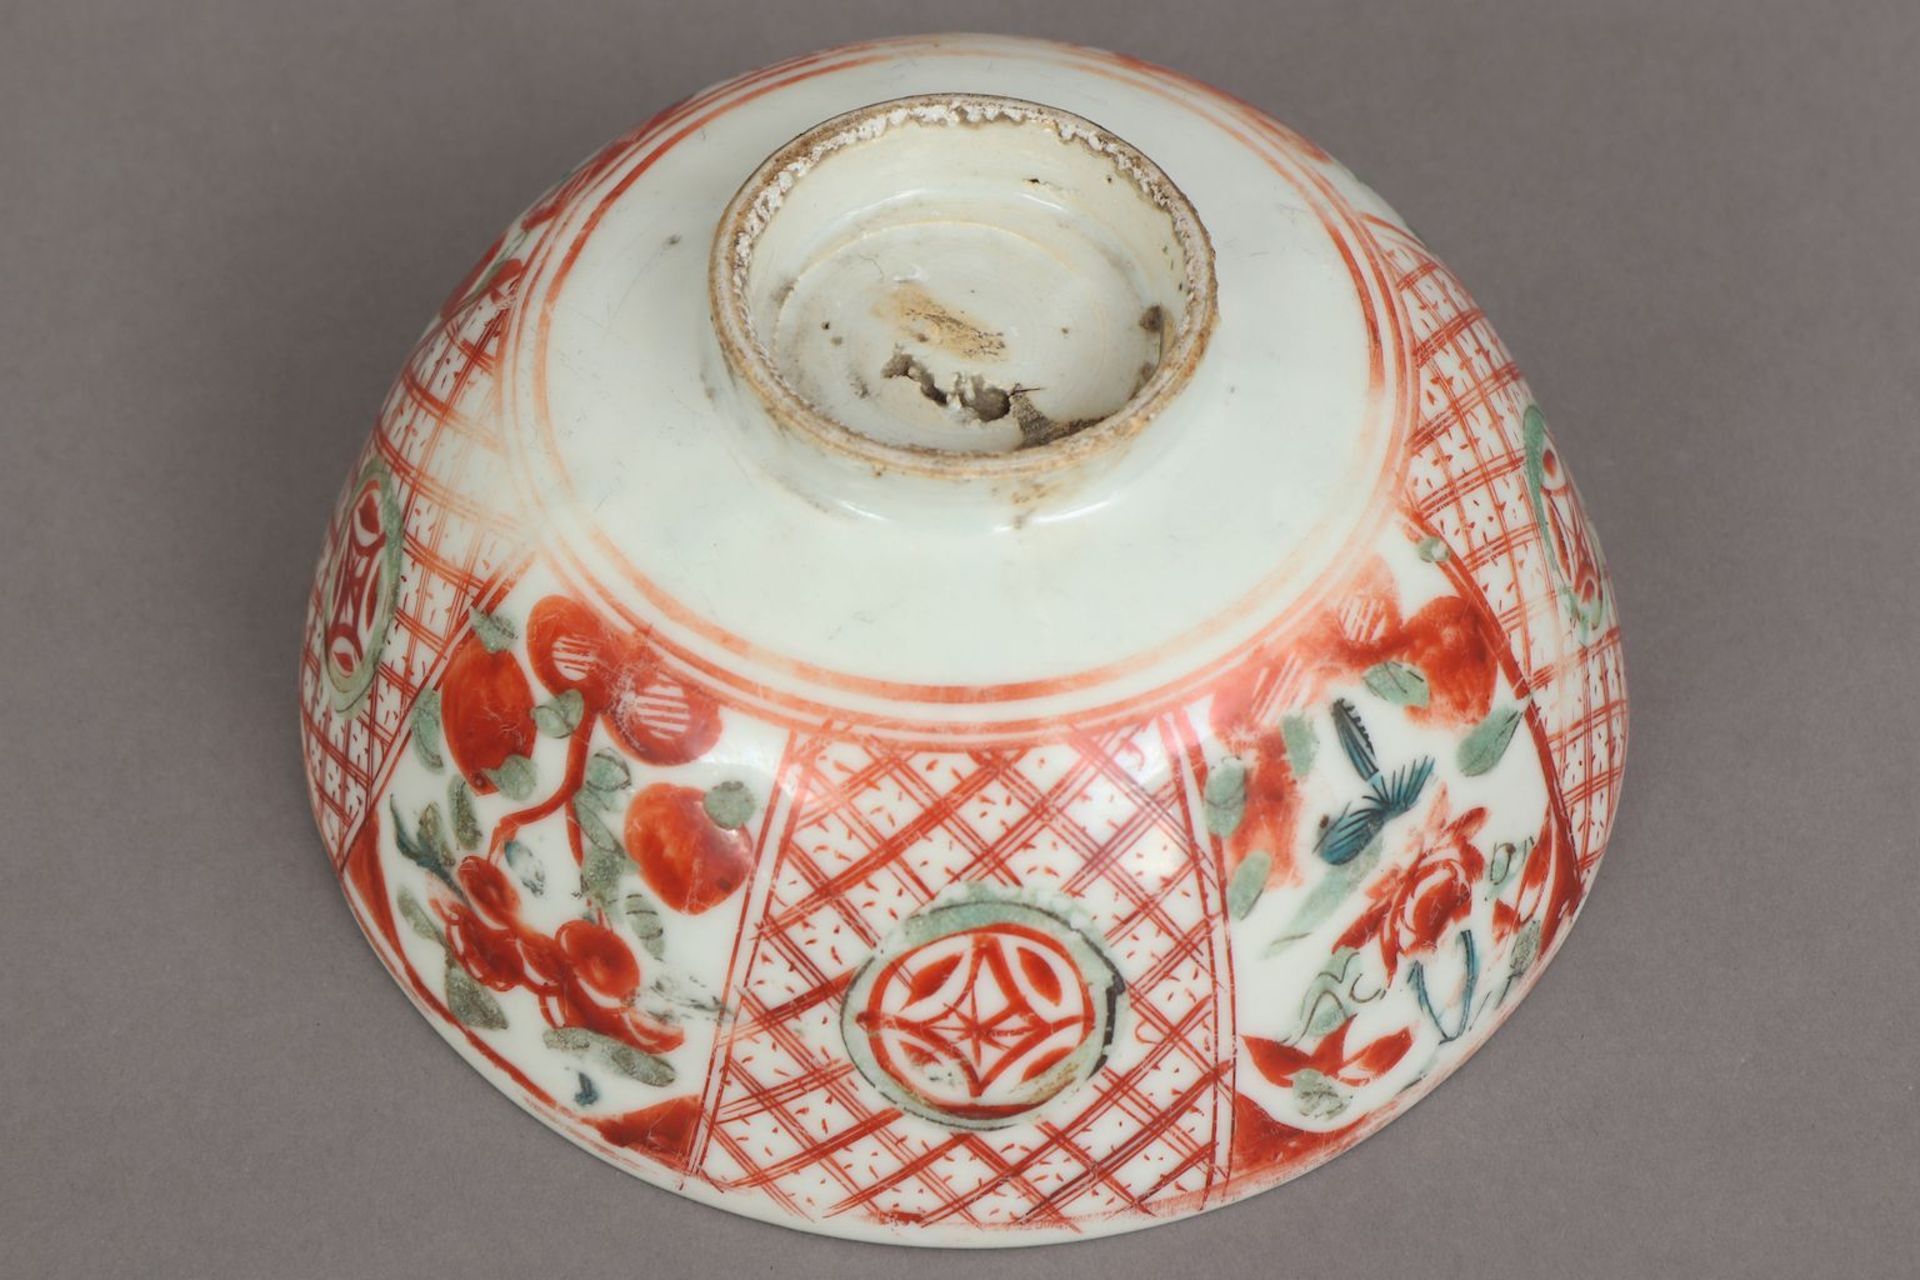 Chinesische Porzellanschale mit Pfirsichdekor - Image 4 of 5